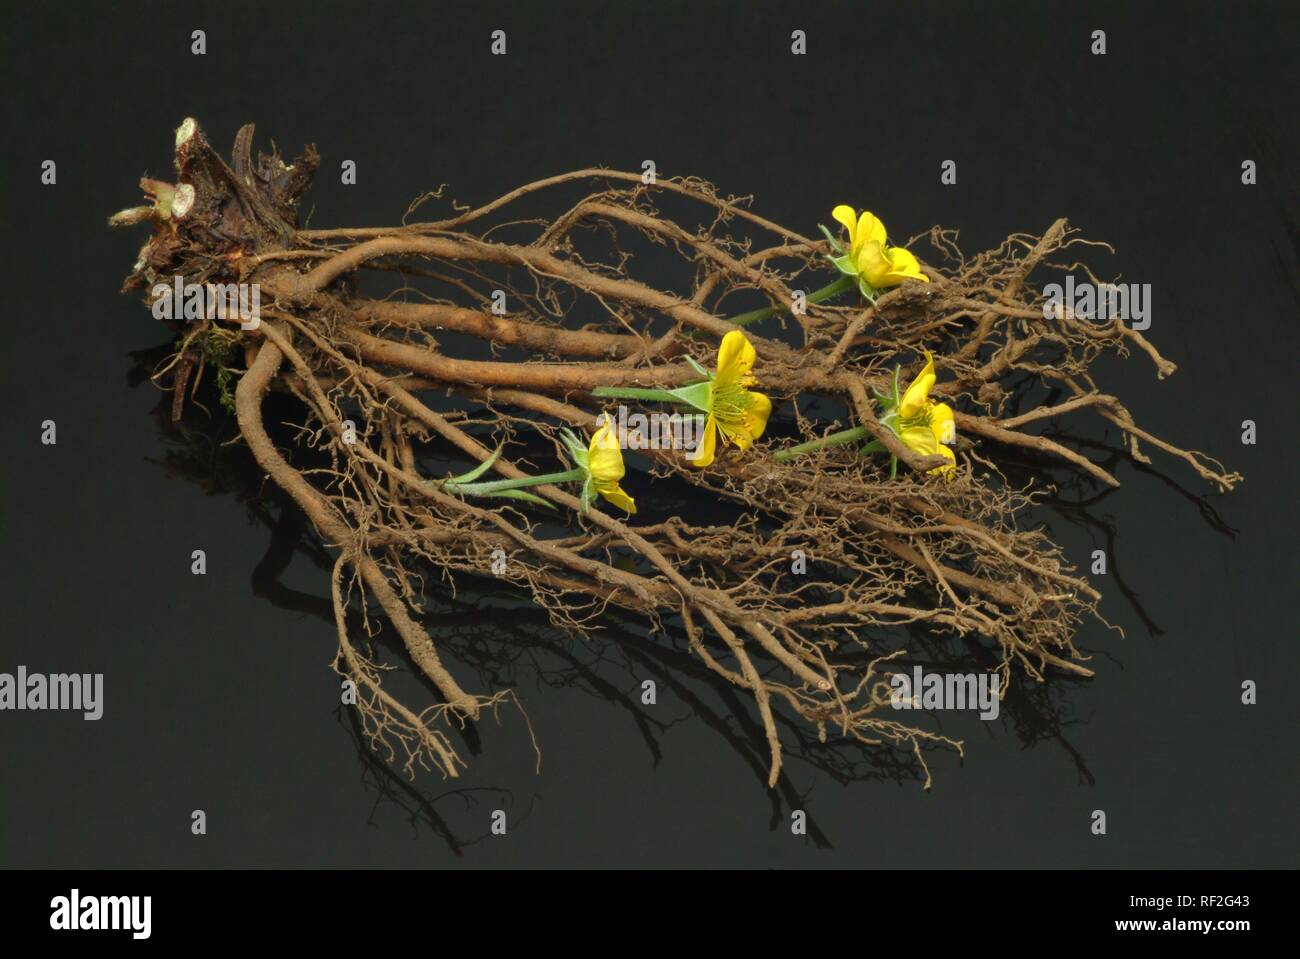 Tormentil or Septifoil (Potentilla erecta, Potentilla tormentilla), medicinal plant Stock Photo